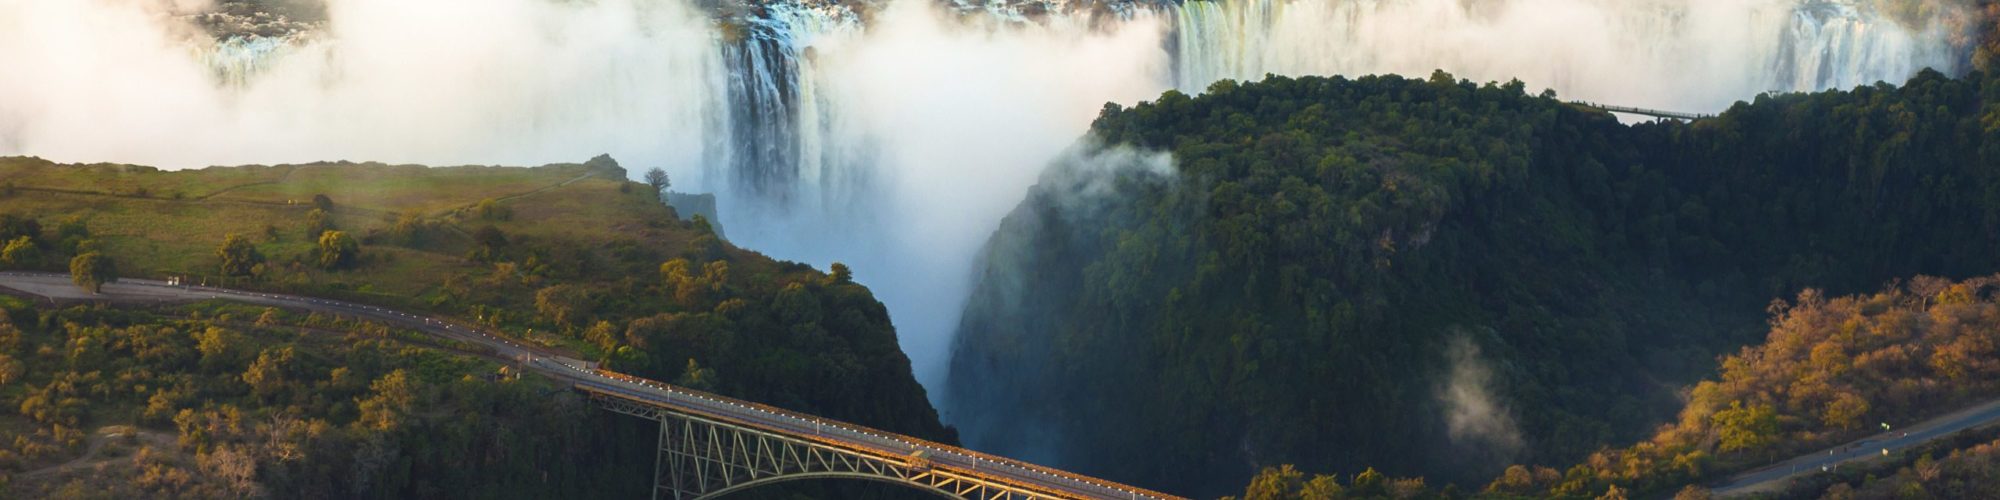 Victoria Falls travel agents packages deals